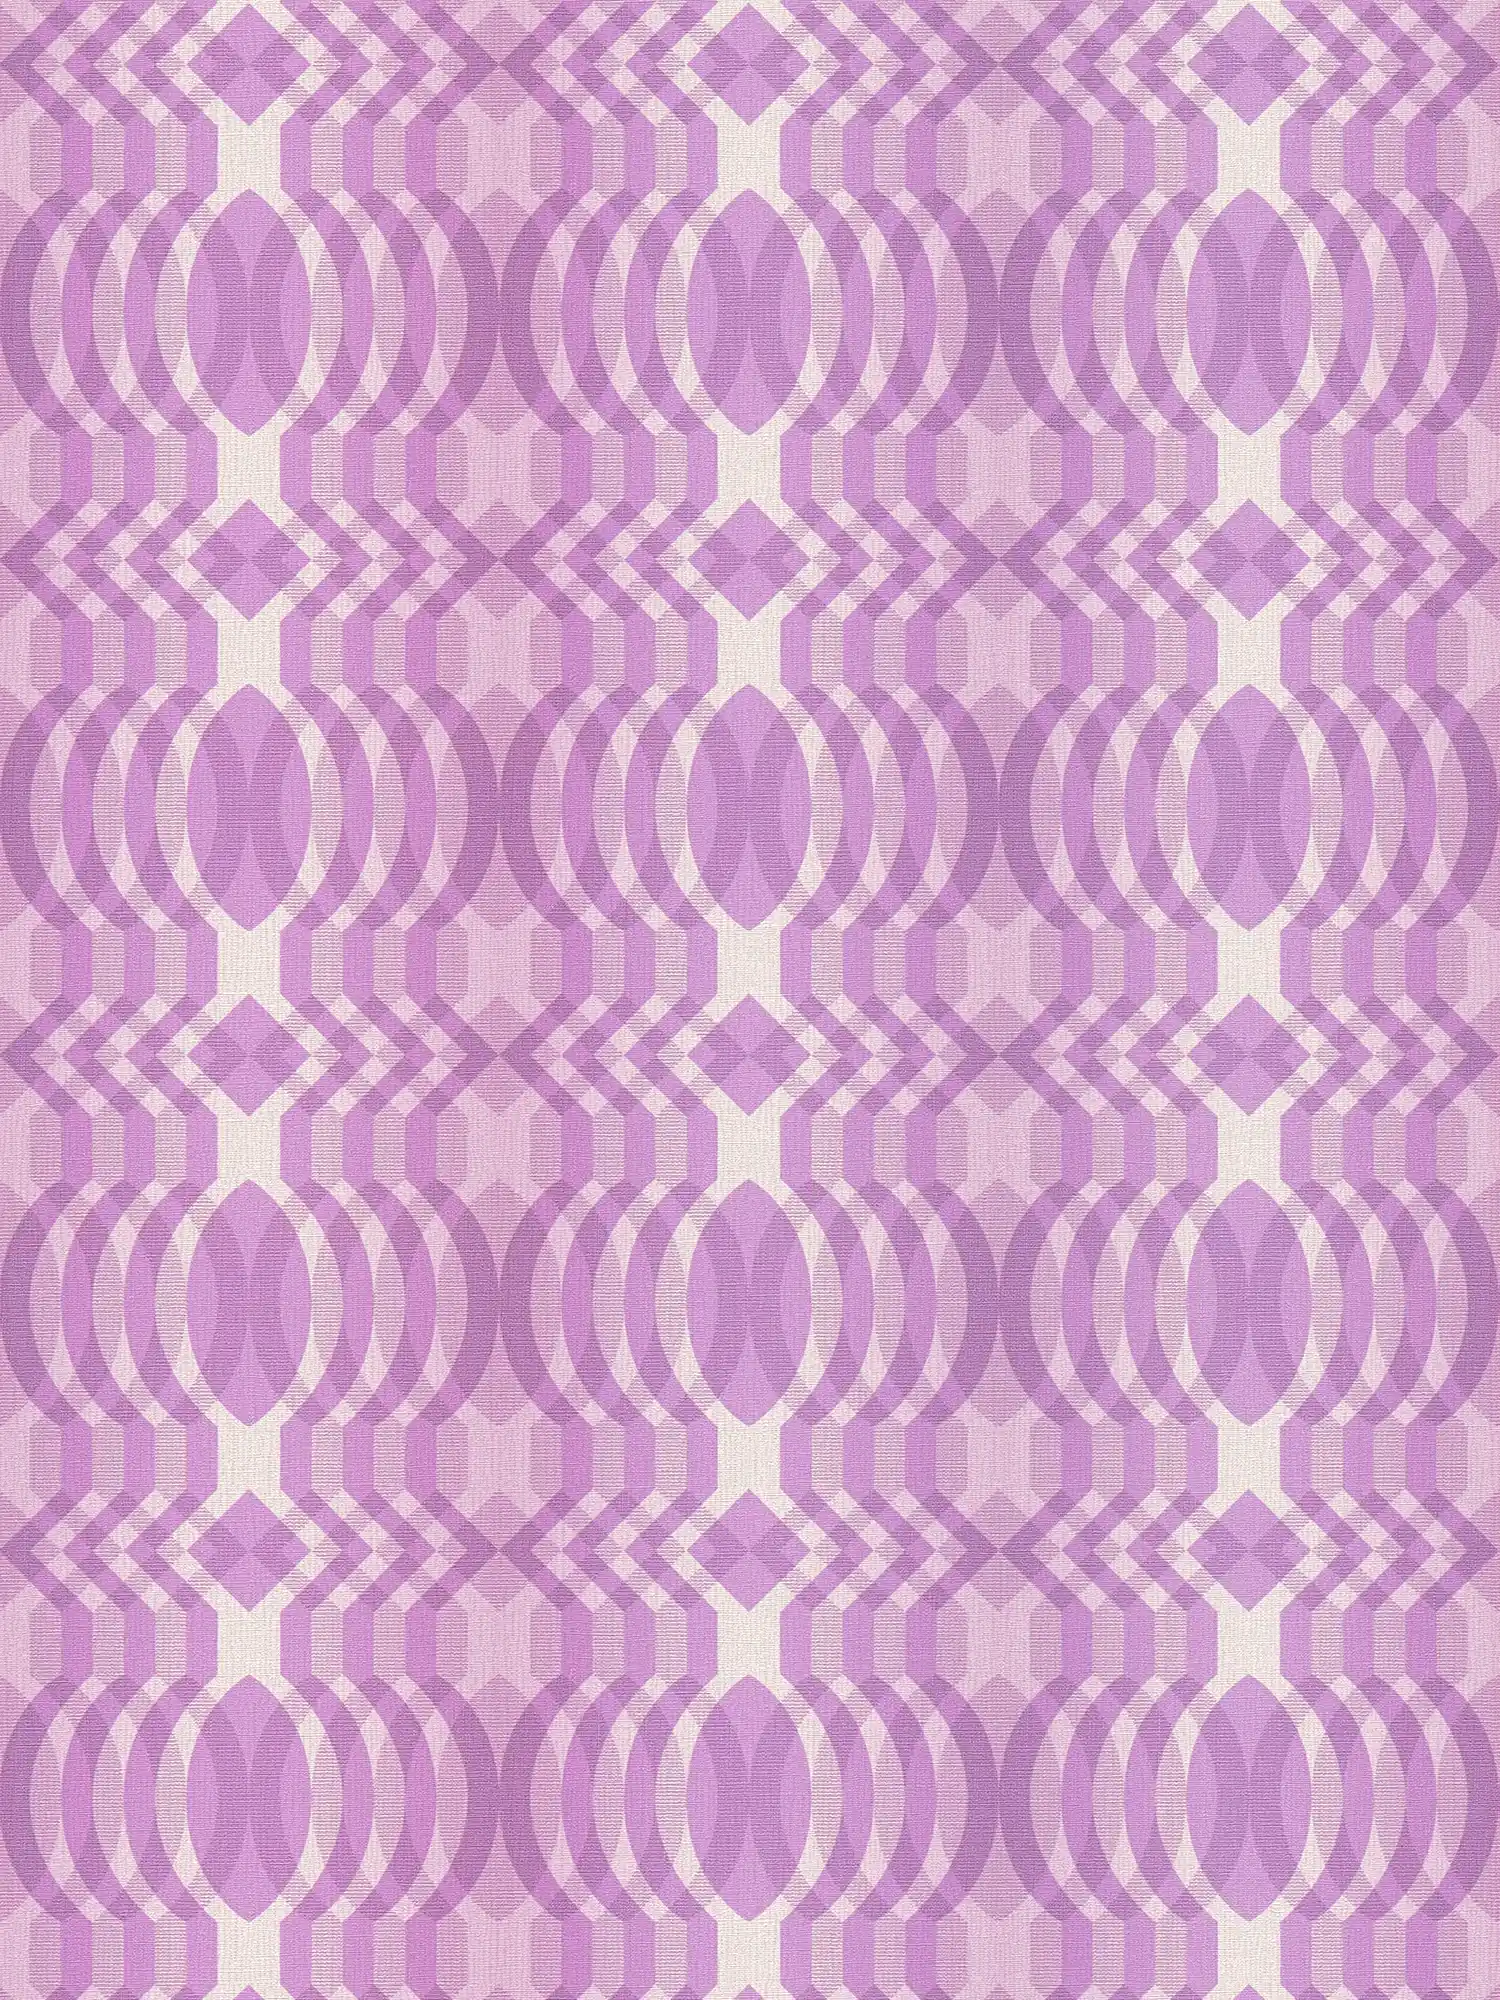 Non-woven wallpaper with geometric pattern in retro style - purple, cream, white
